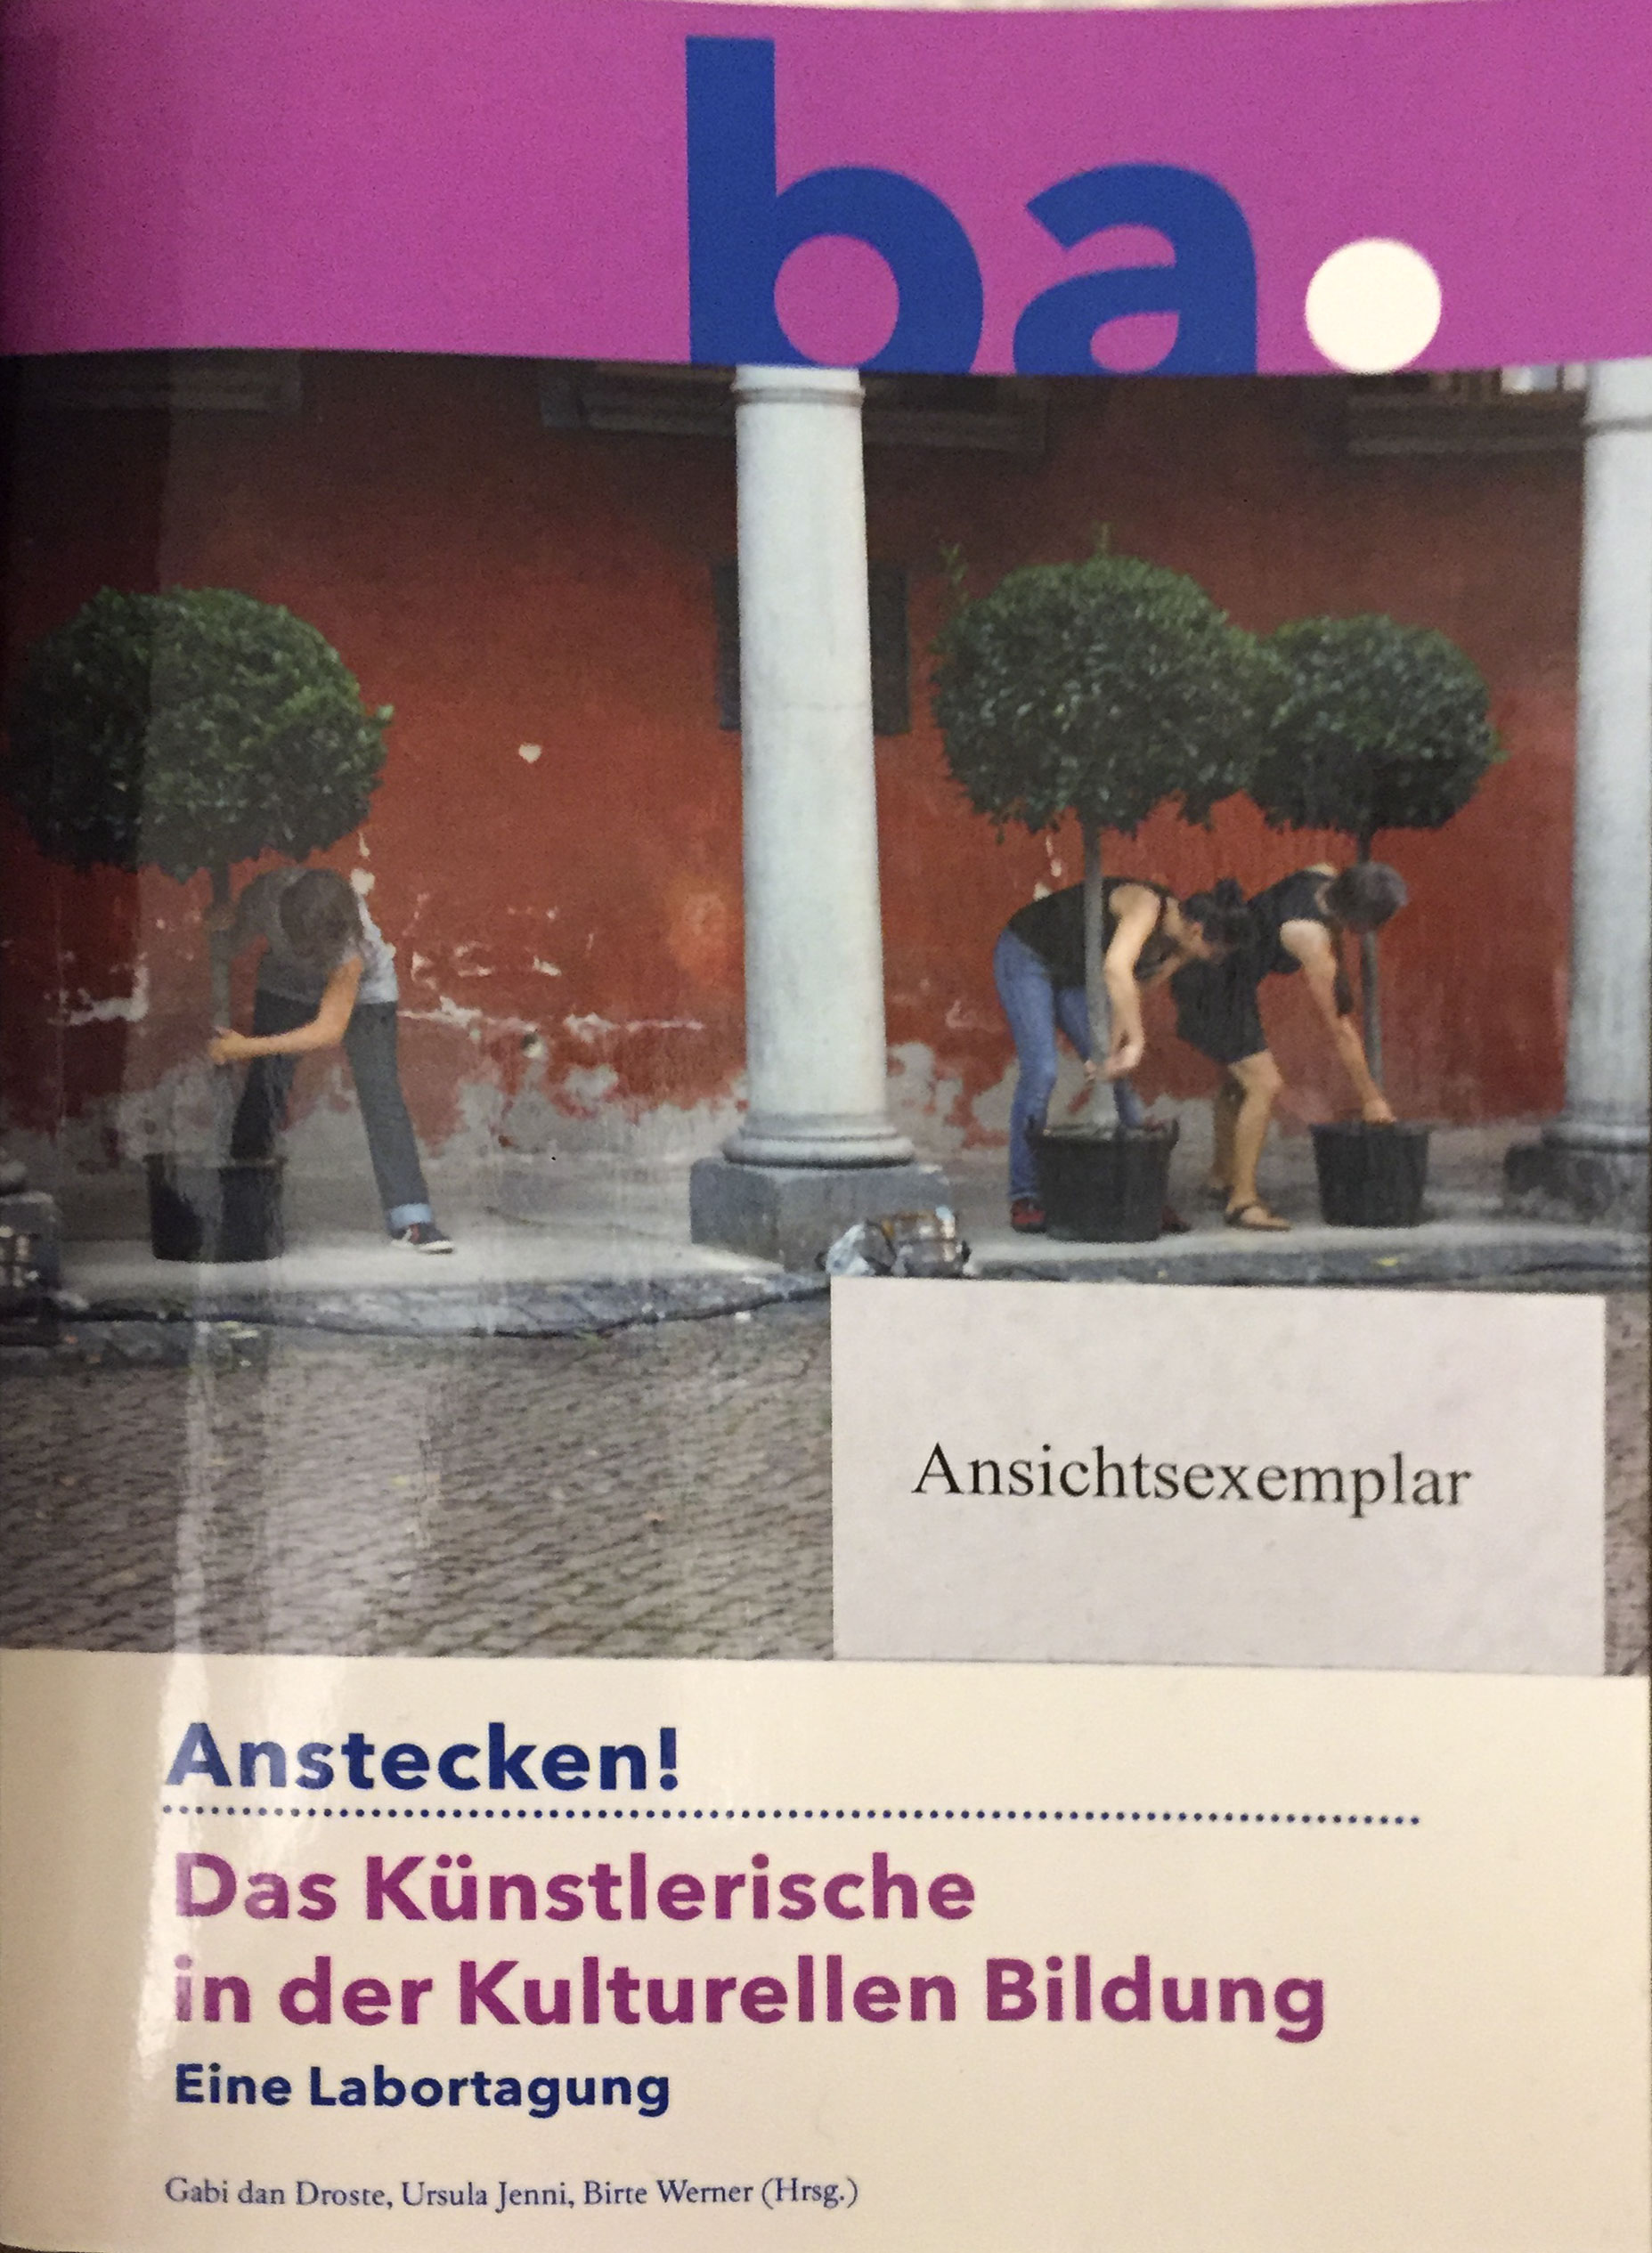 Droste, Jenni, Werner: Anstecken! Das Künstlerische in der Kulturellen Bildung